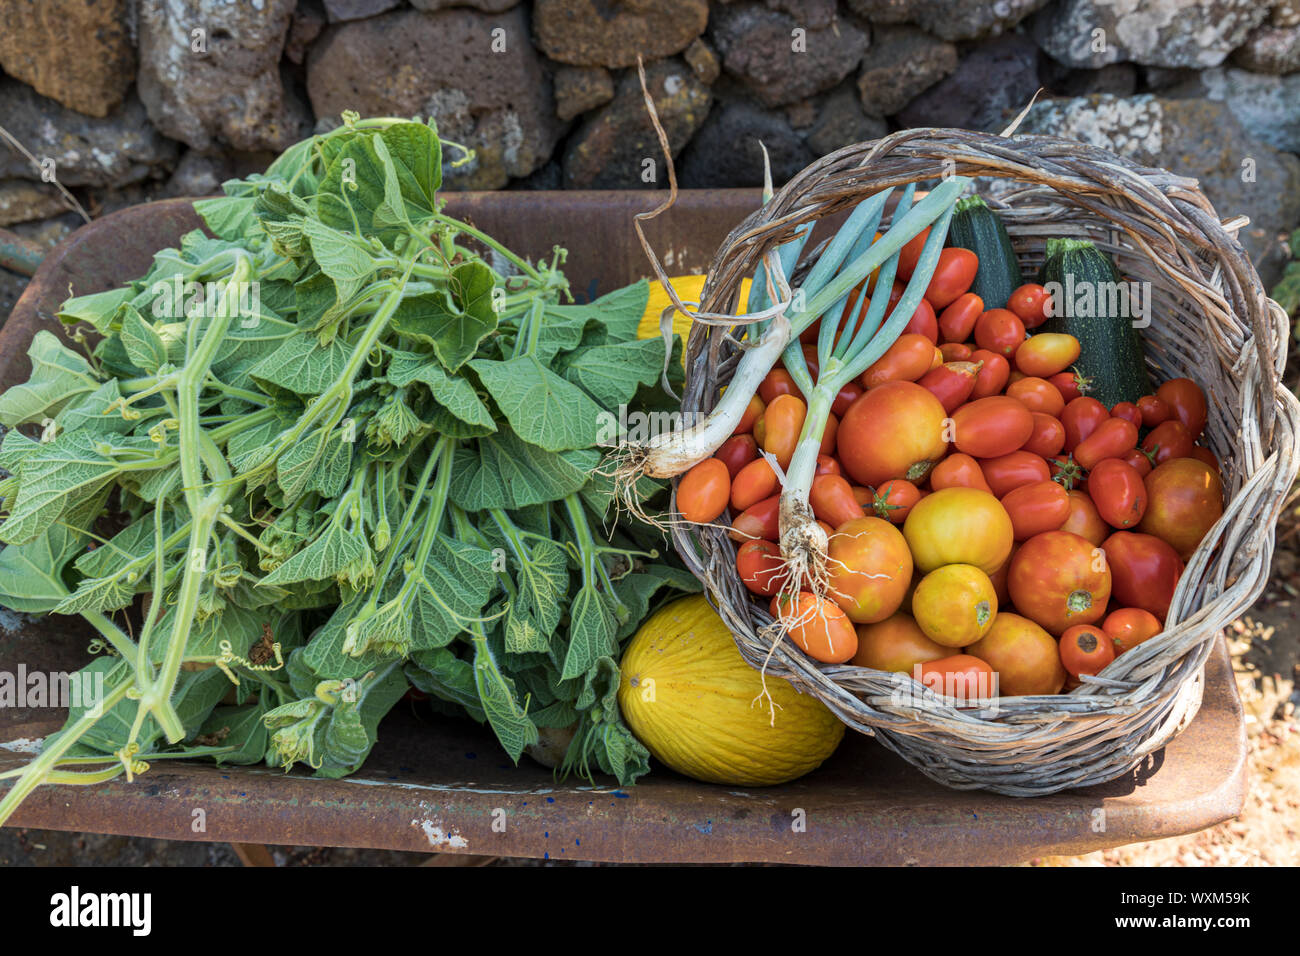 Des légumes frais et des fruits dans une brouette. Courge longue feuilles, melons et panier en osier avec tomates, courgettes et ciboulette Banque D'Images